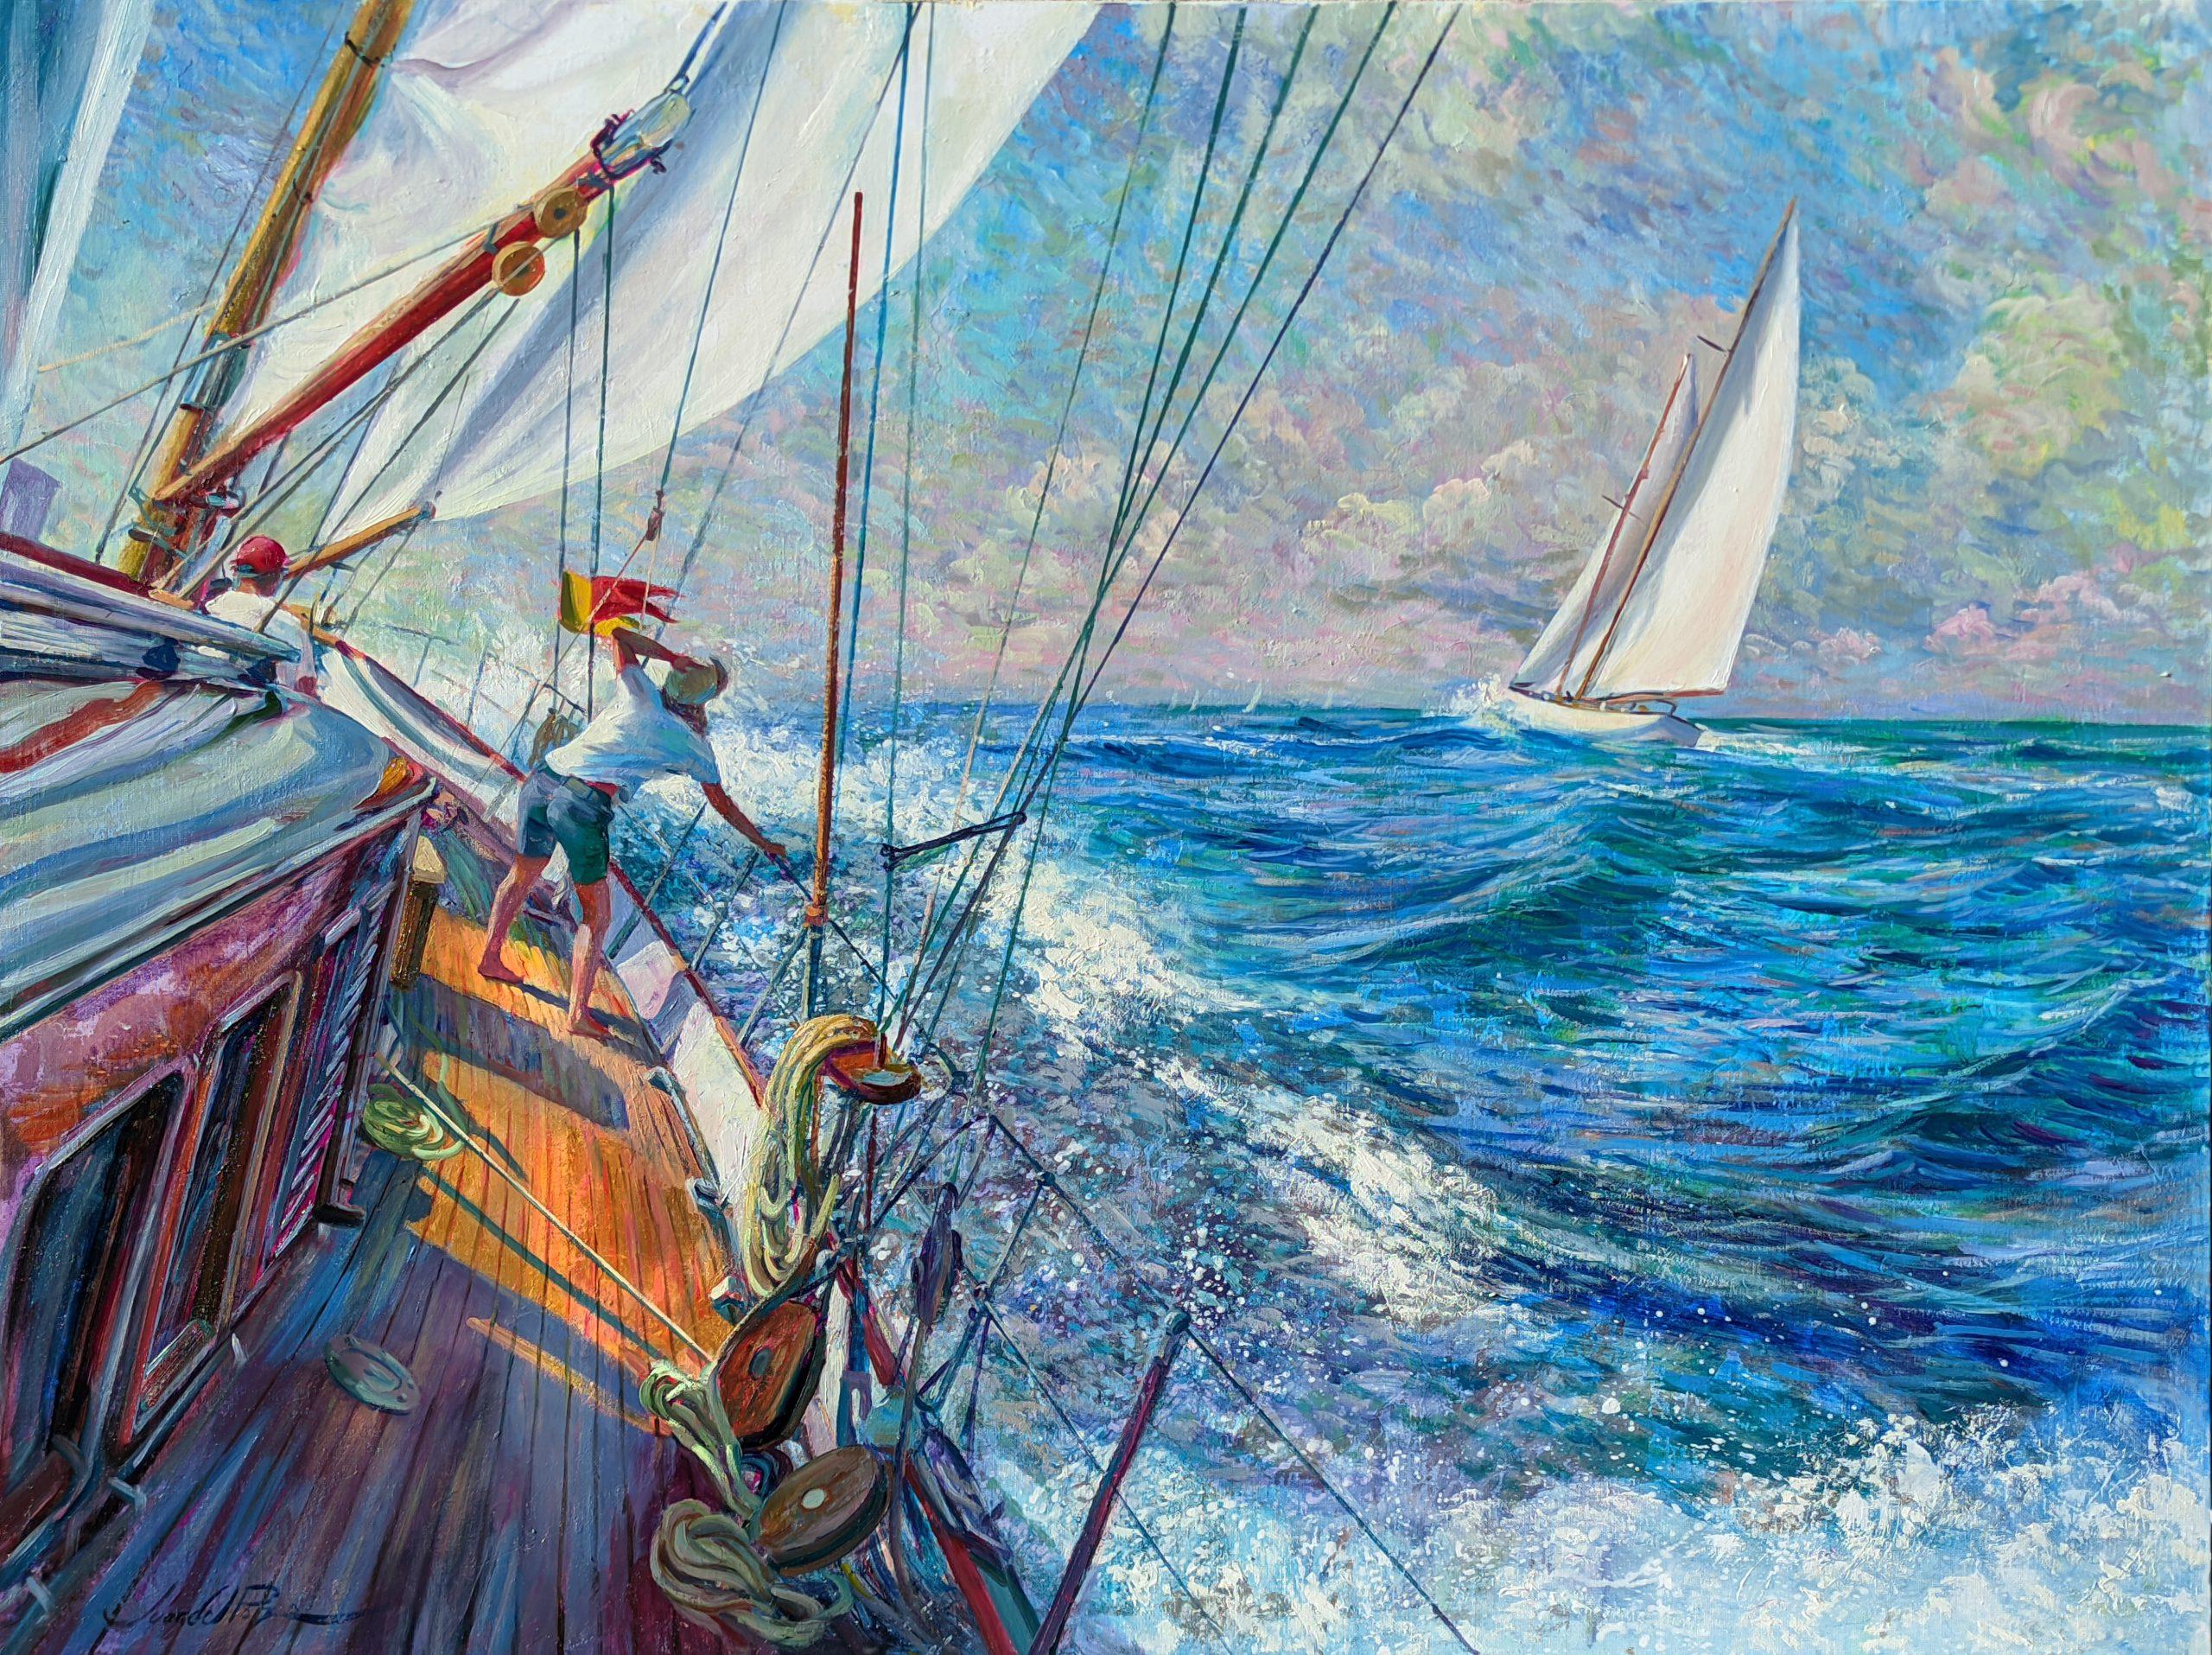 Juan del Pozo Landscape Painting - Golden Deck-original impressionism seascape sail oil painting-contemporary art